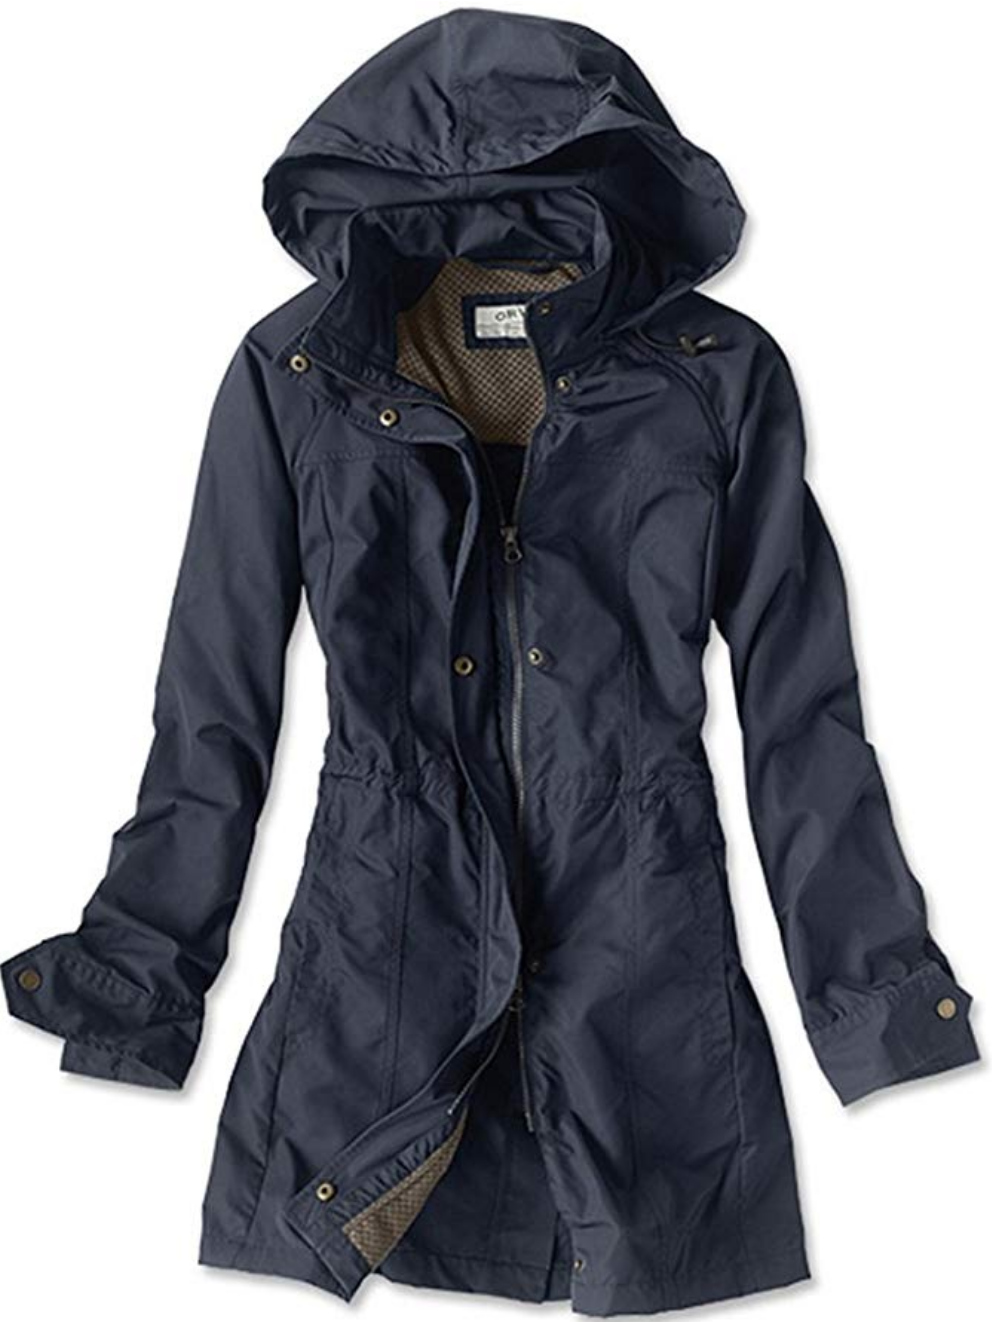 URRU Womens Lightweight Hooded Raincoat Waterproof Packable Active Outdoor Rain Jacket S-XXL